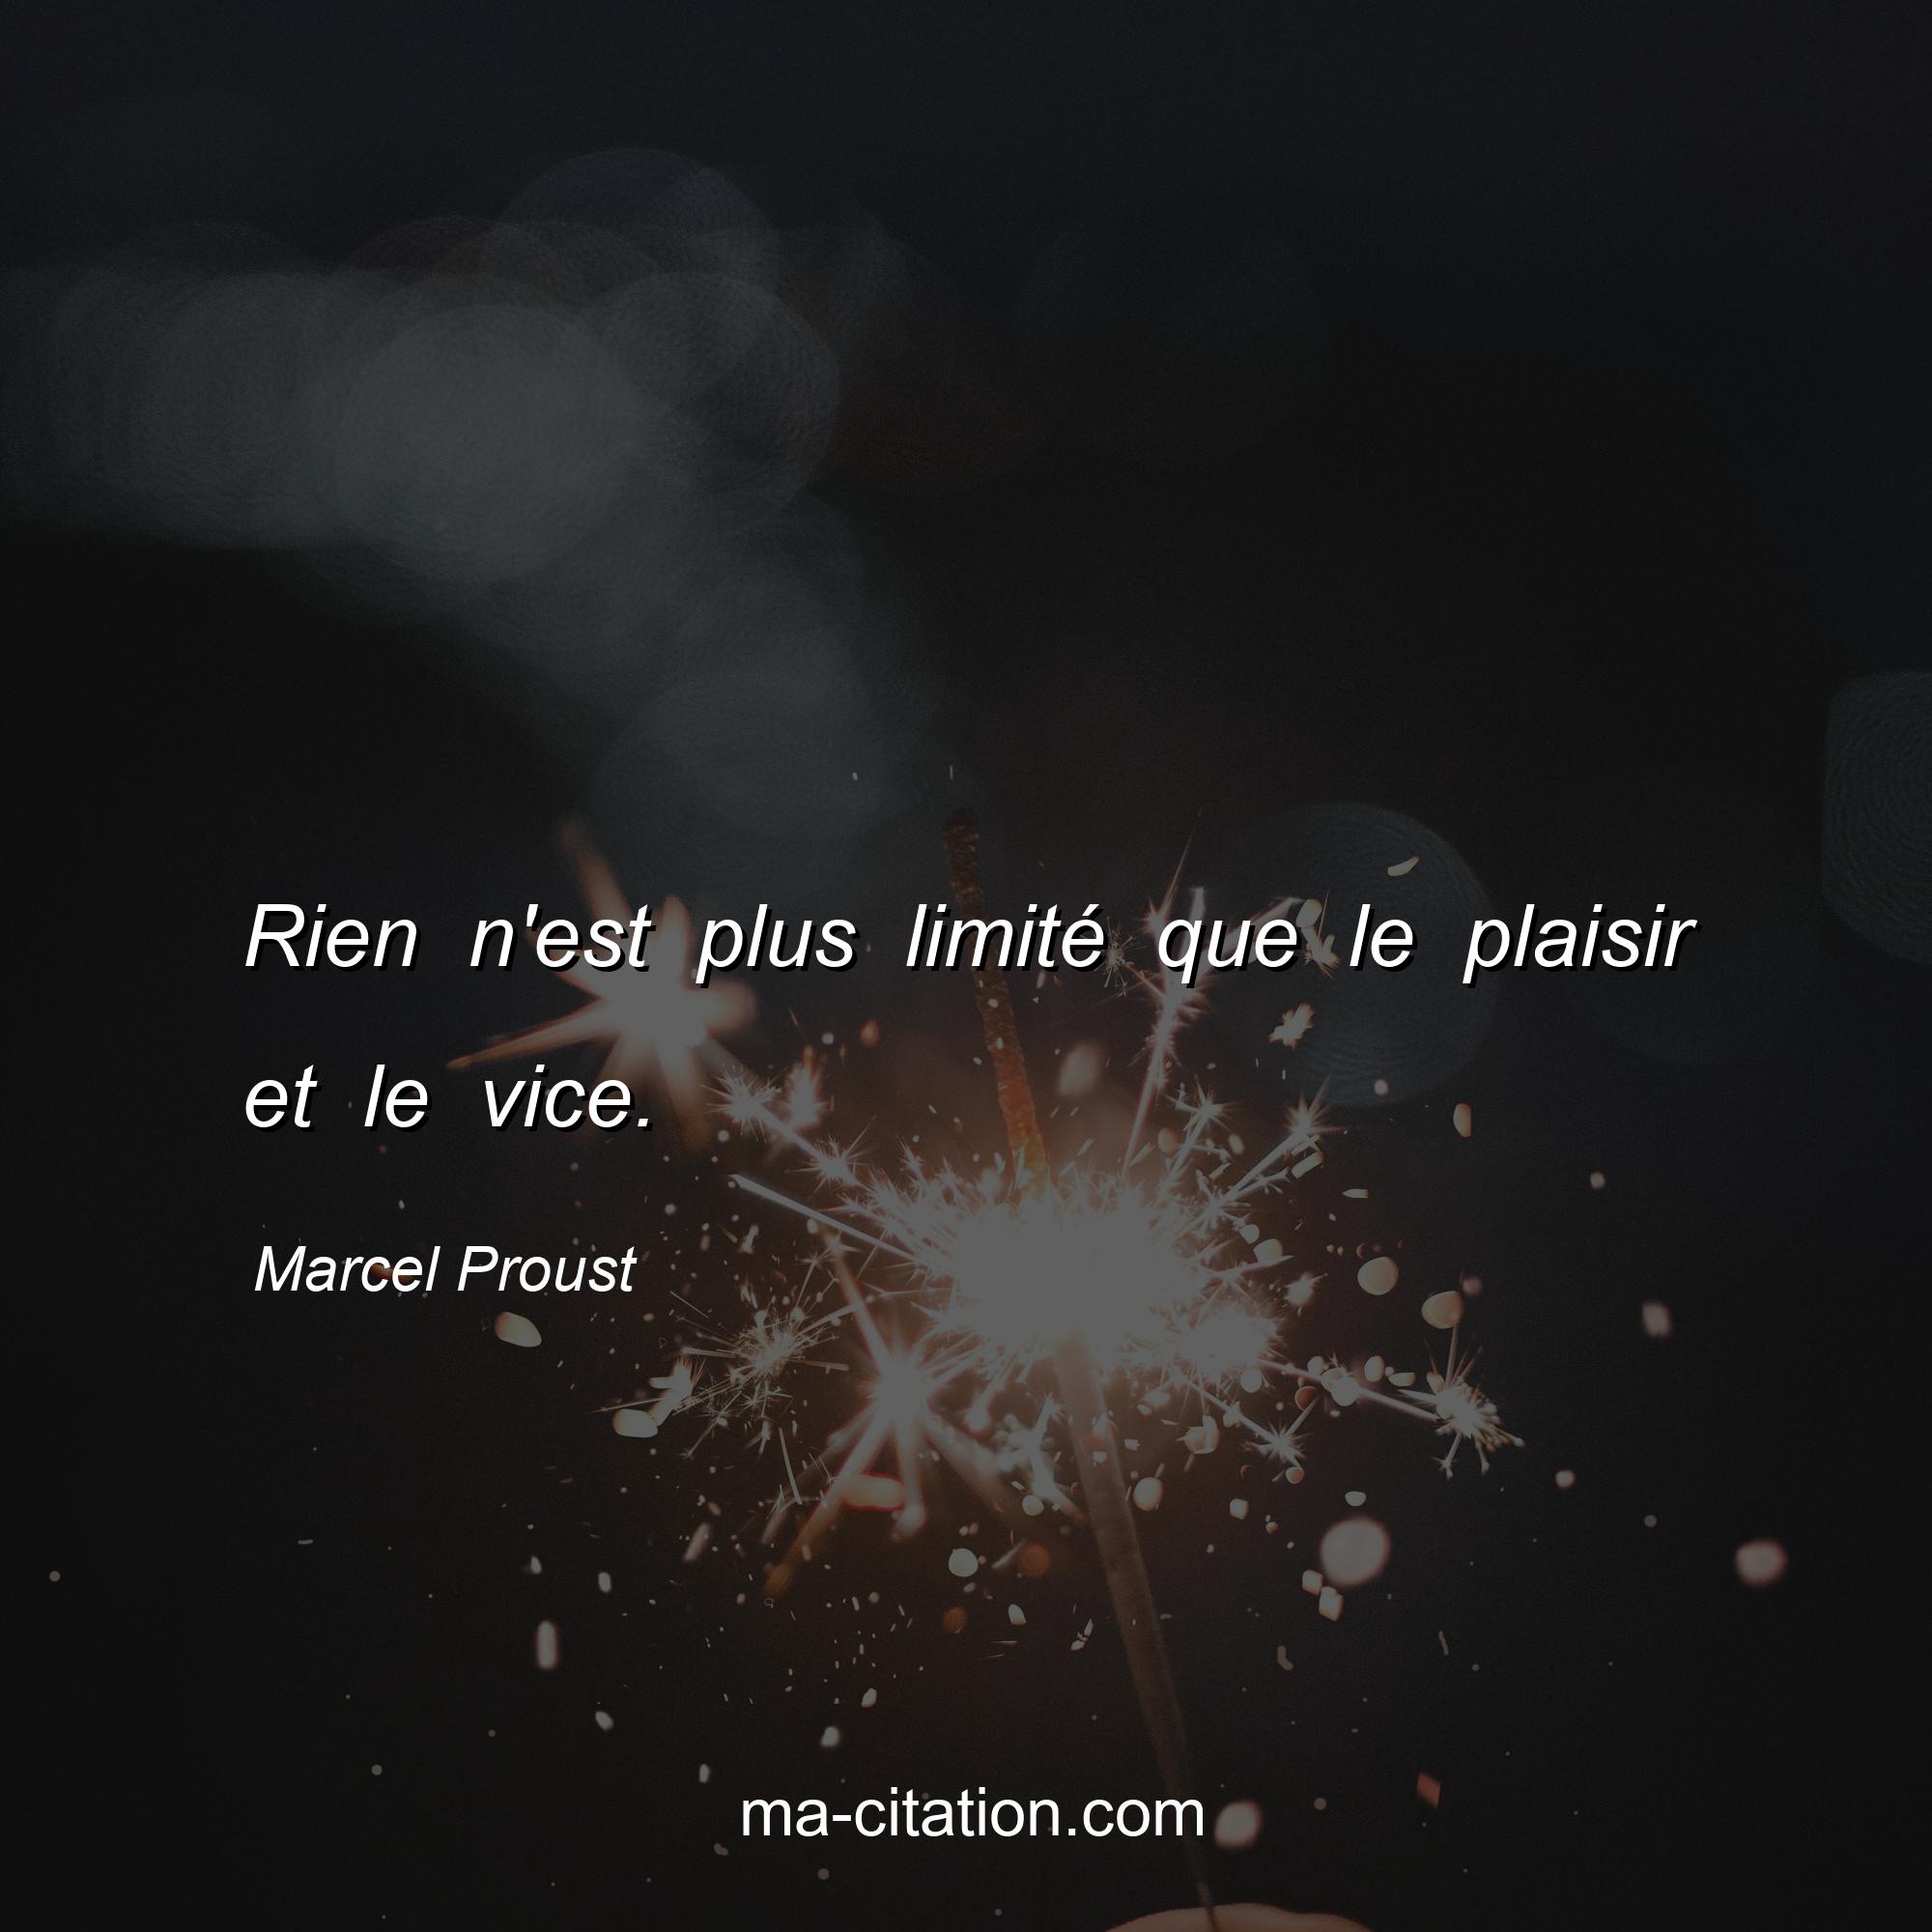 Marcel Proust : Rien n'est plus limité que le plaisir et le vice.